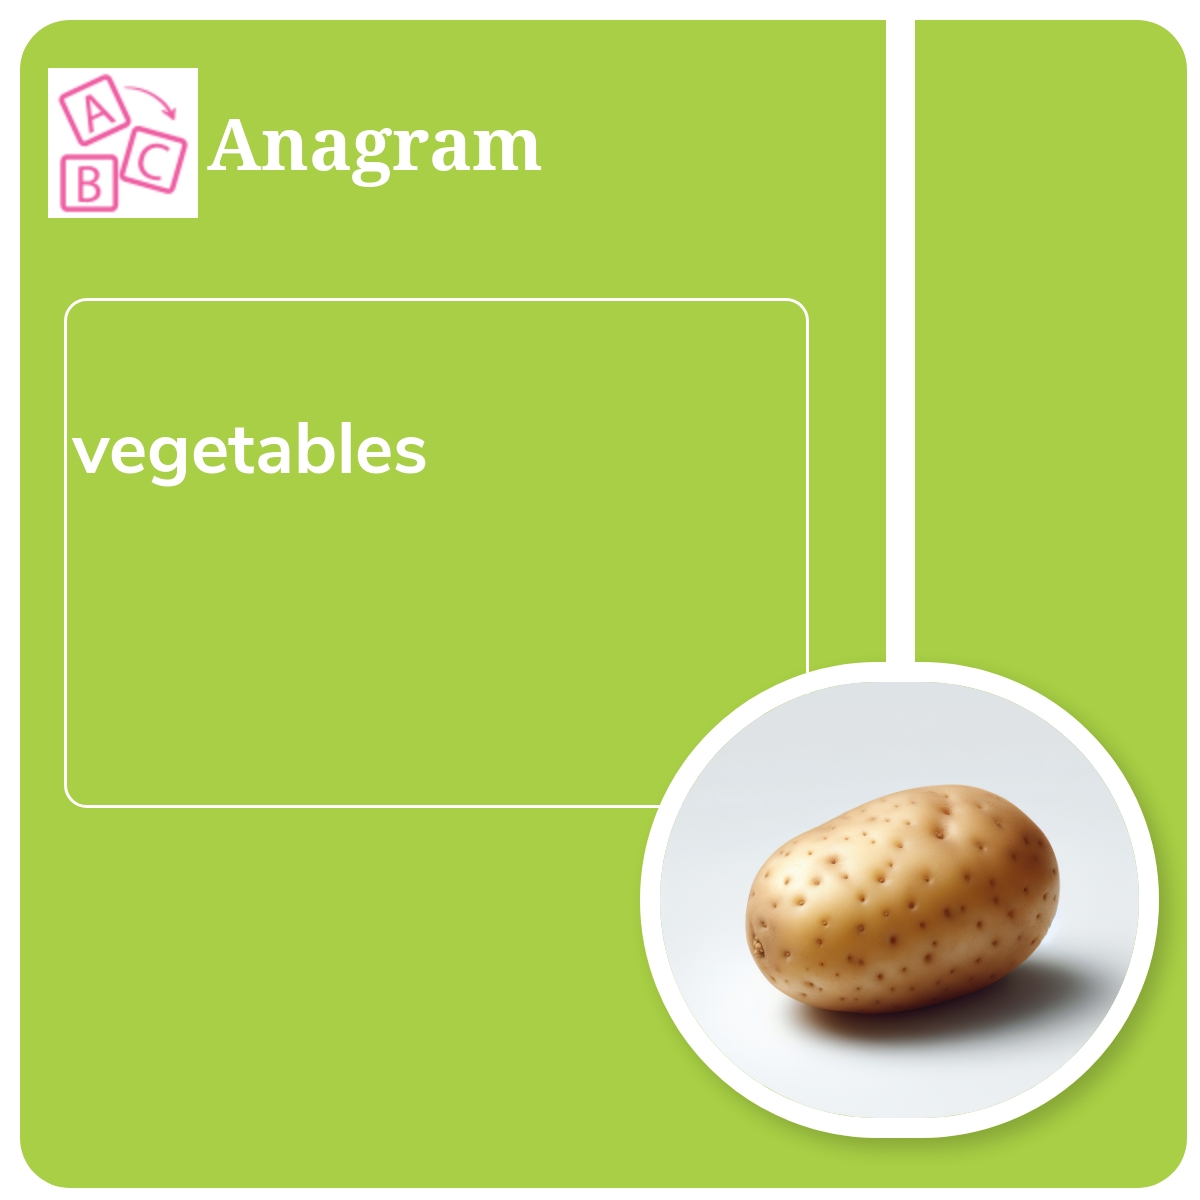 Simple Anagram: vegetables